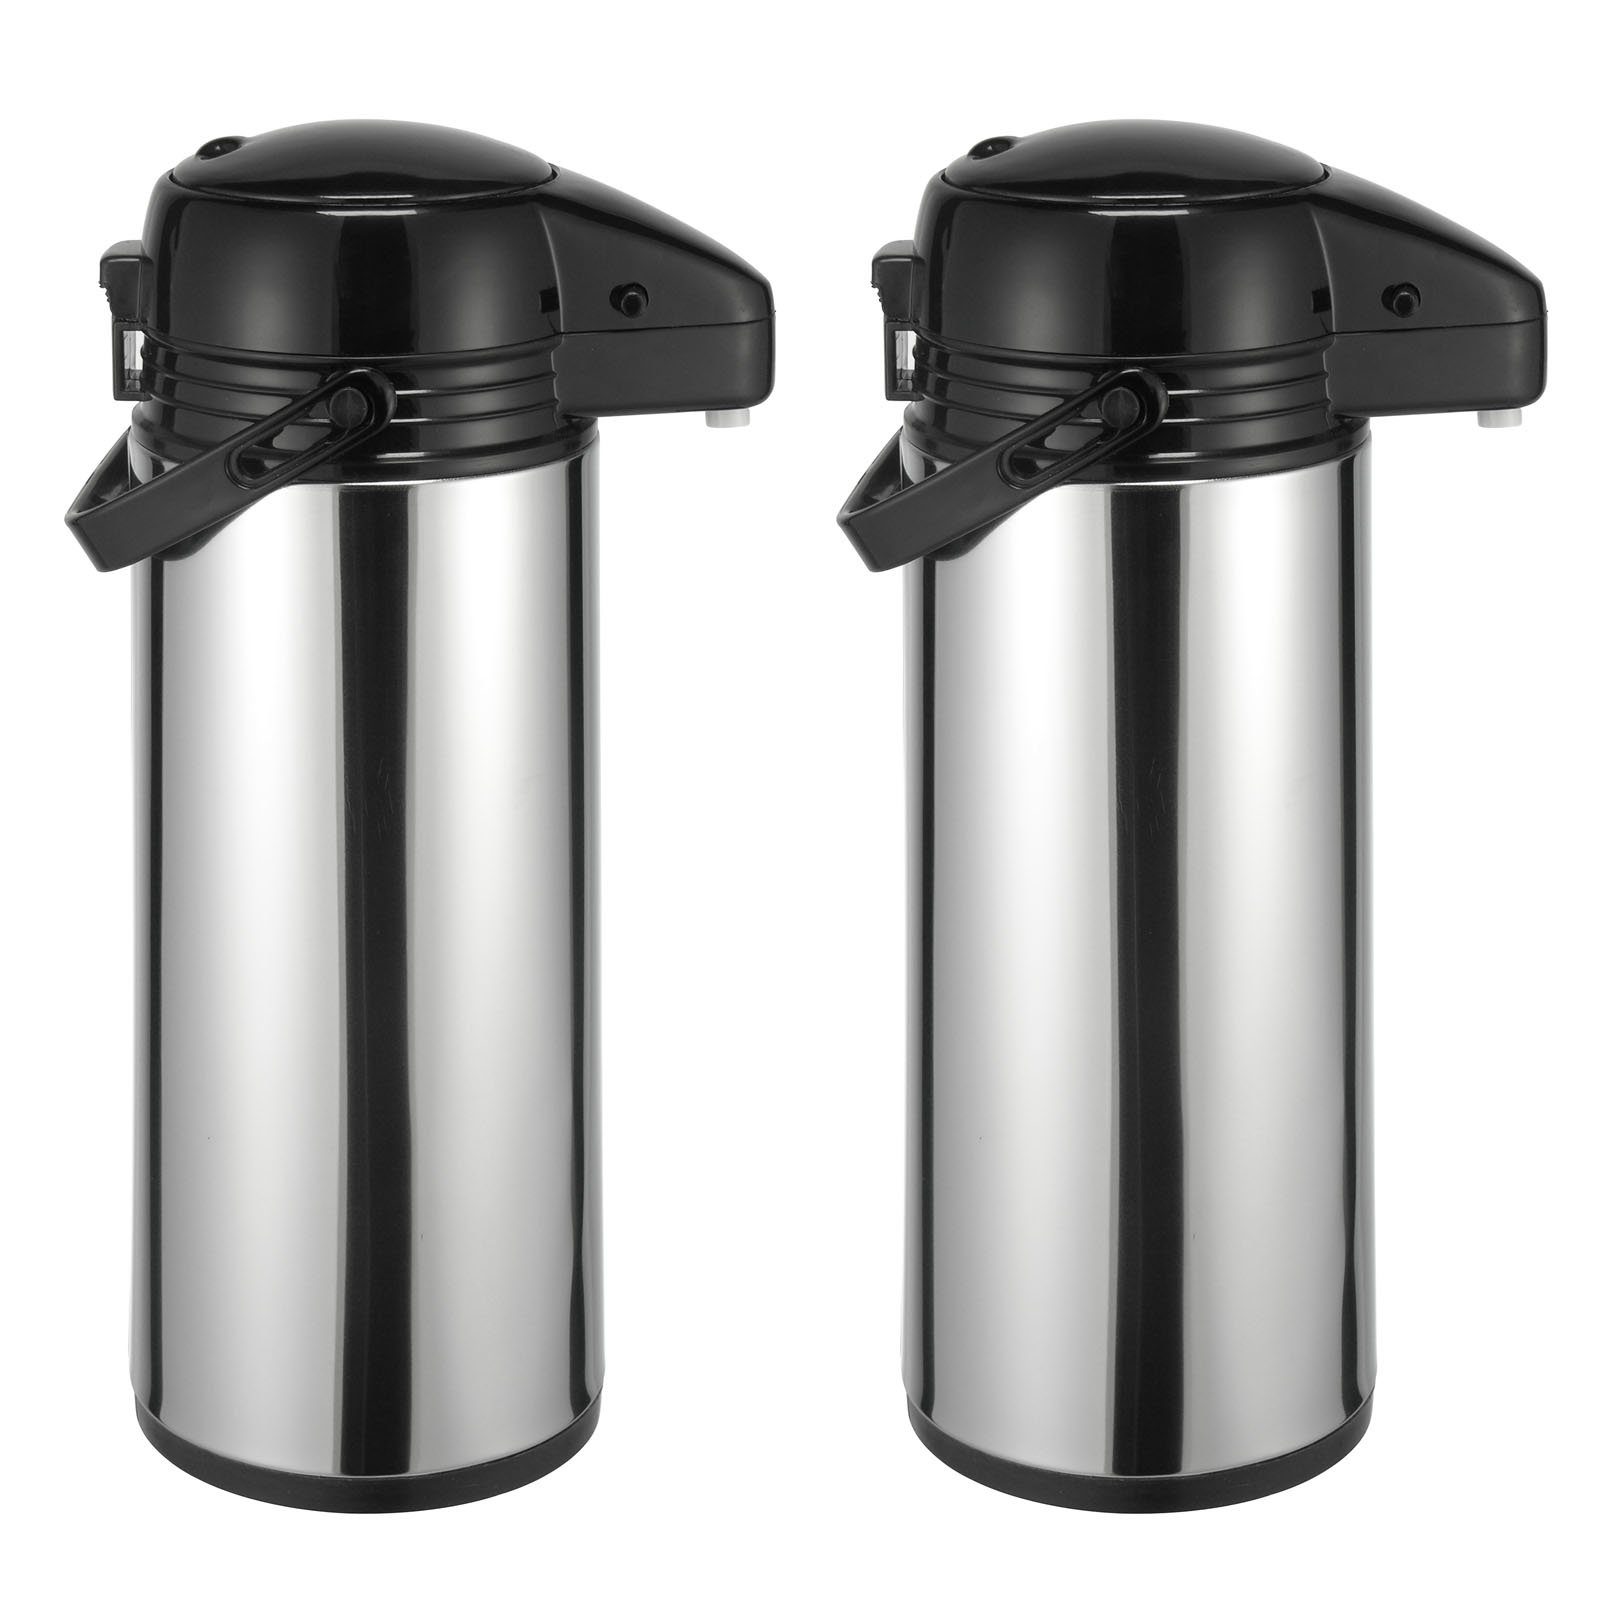 HAC24 Pump-Isolierkanne Thermoskanne Kaffeekanne 1,9 Mit Kanne Pumpkanne, Airpot Tee Kaffee Isolierkanne (2 Teekanne Stück), Tragegriff Pumpmechanismus Edelstahl, Thermo l, &